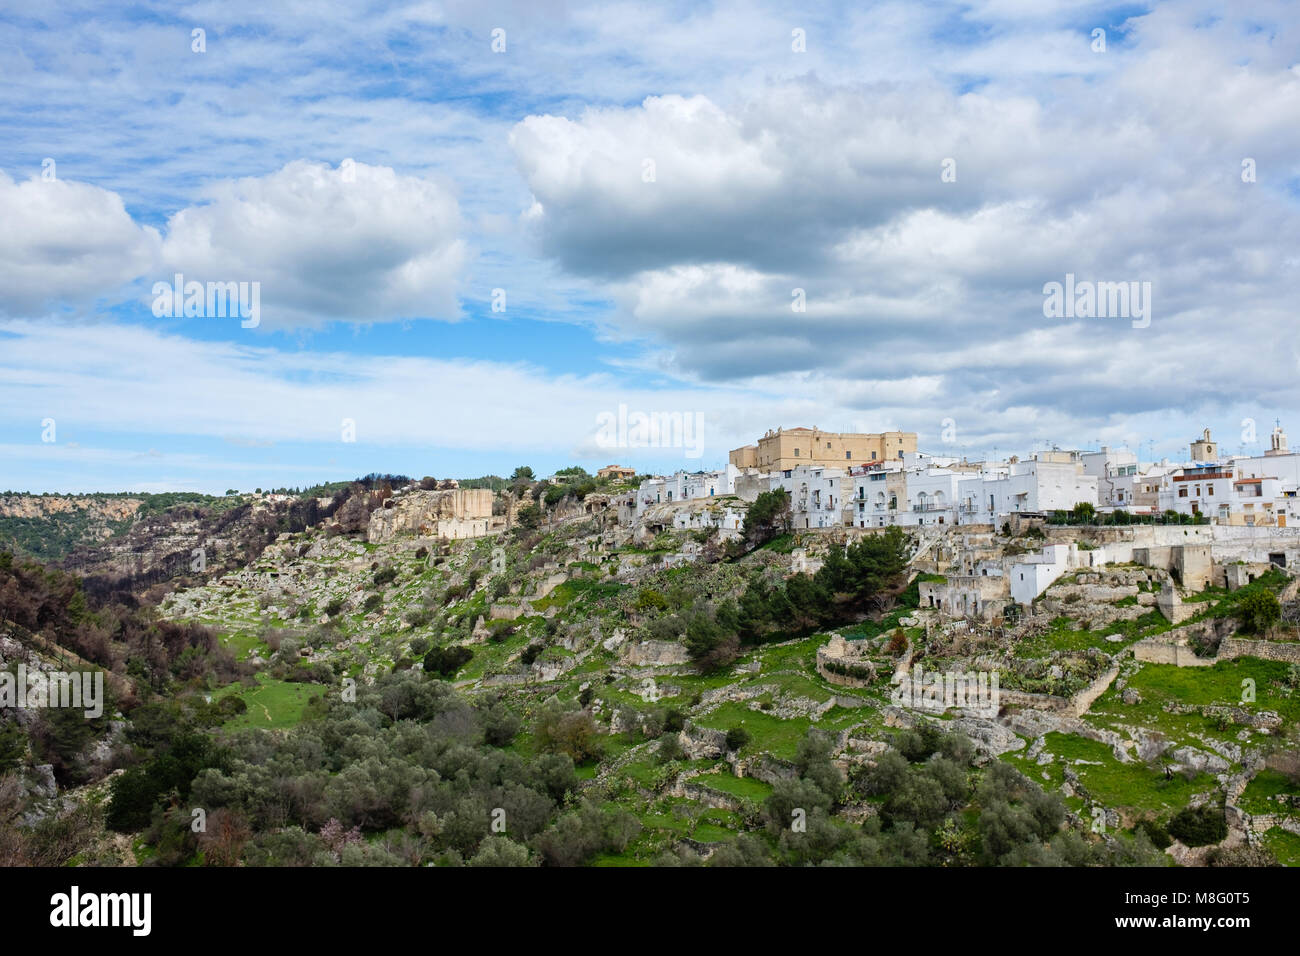 Canyon von palagianello Gravina genannt. Region Apulien, Italien. Stockfoto